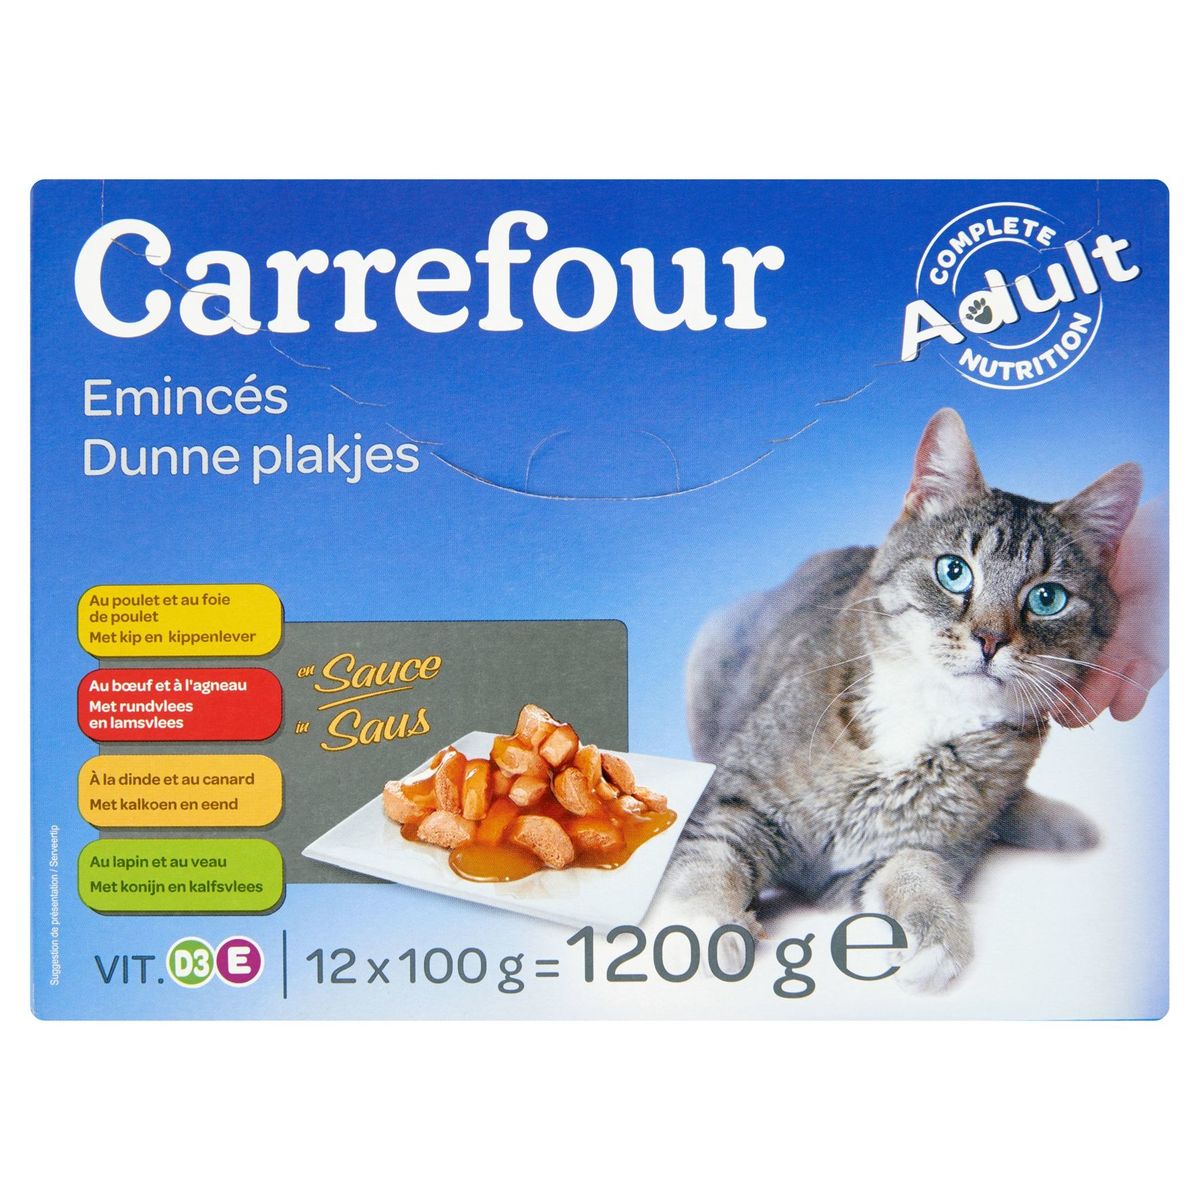 Carrefour Emincés en Sauce 12 x 100 g